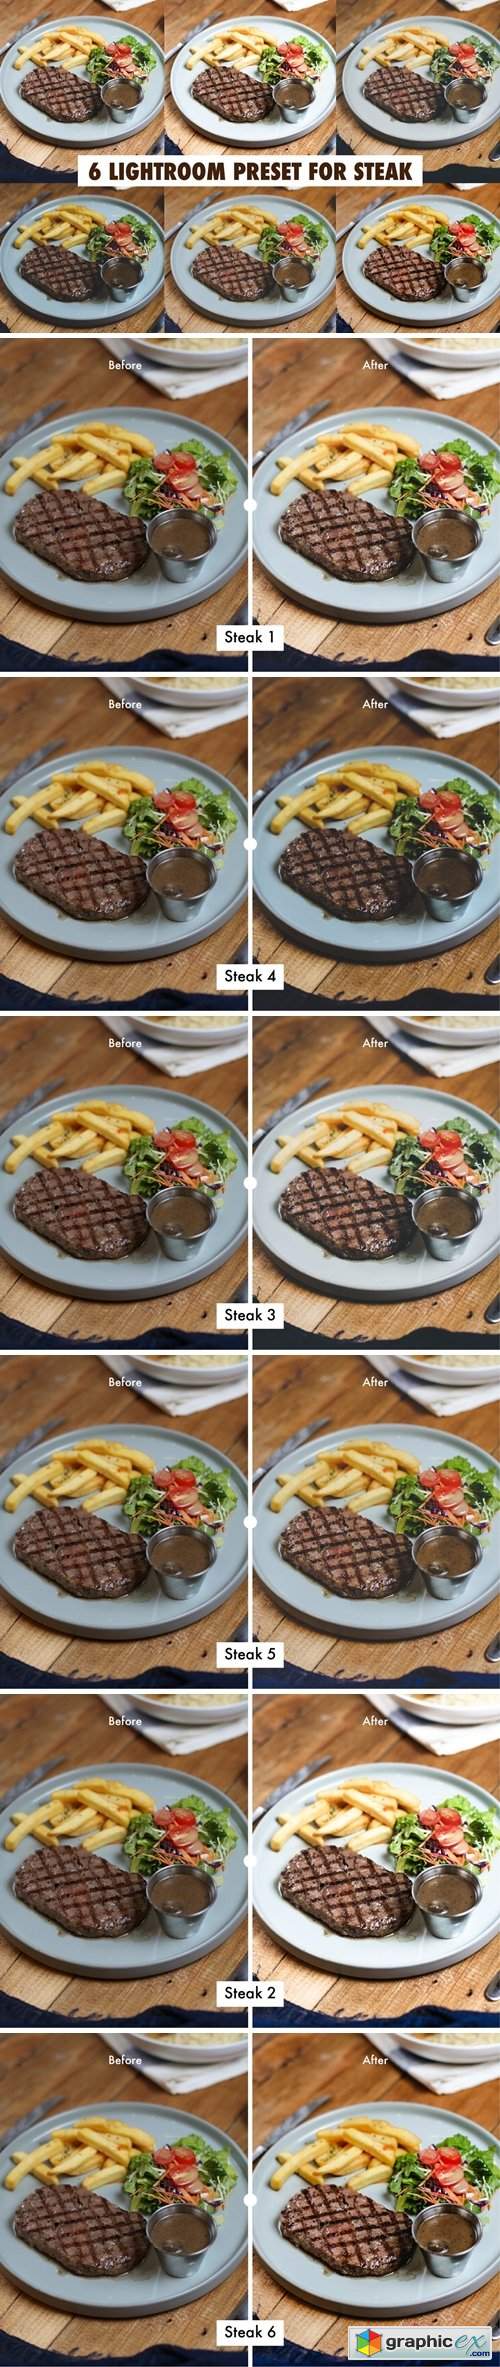 6 Lightroom Preset for Steak